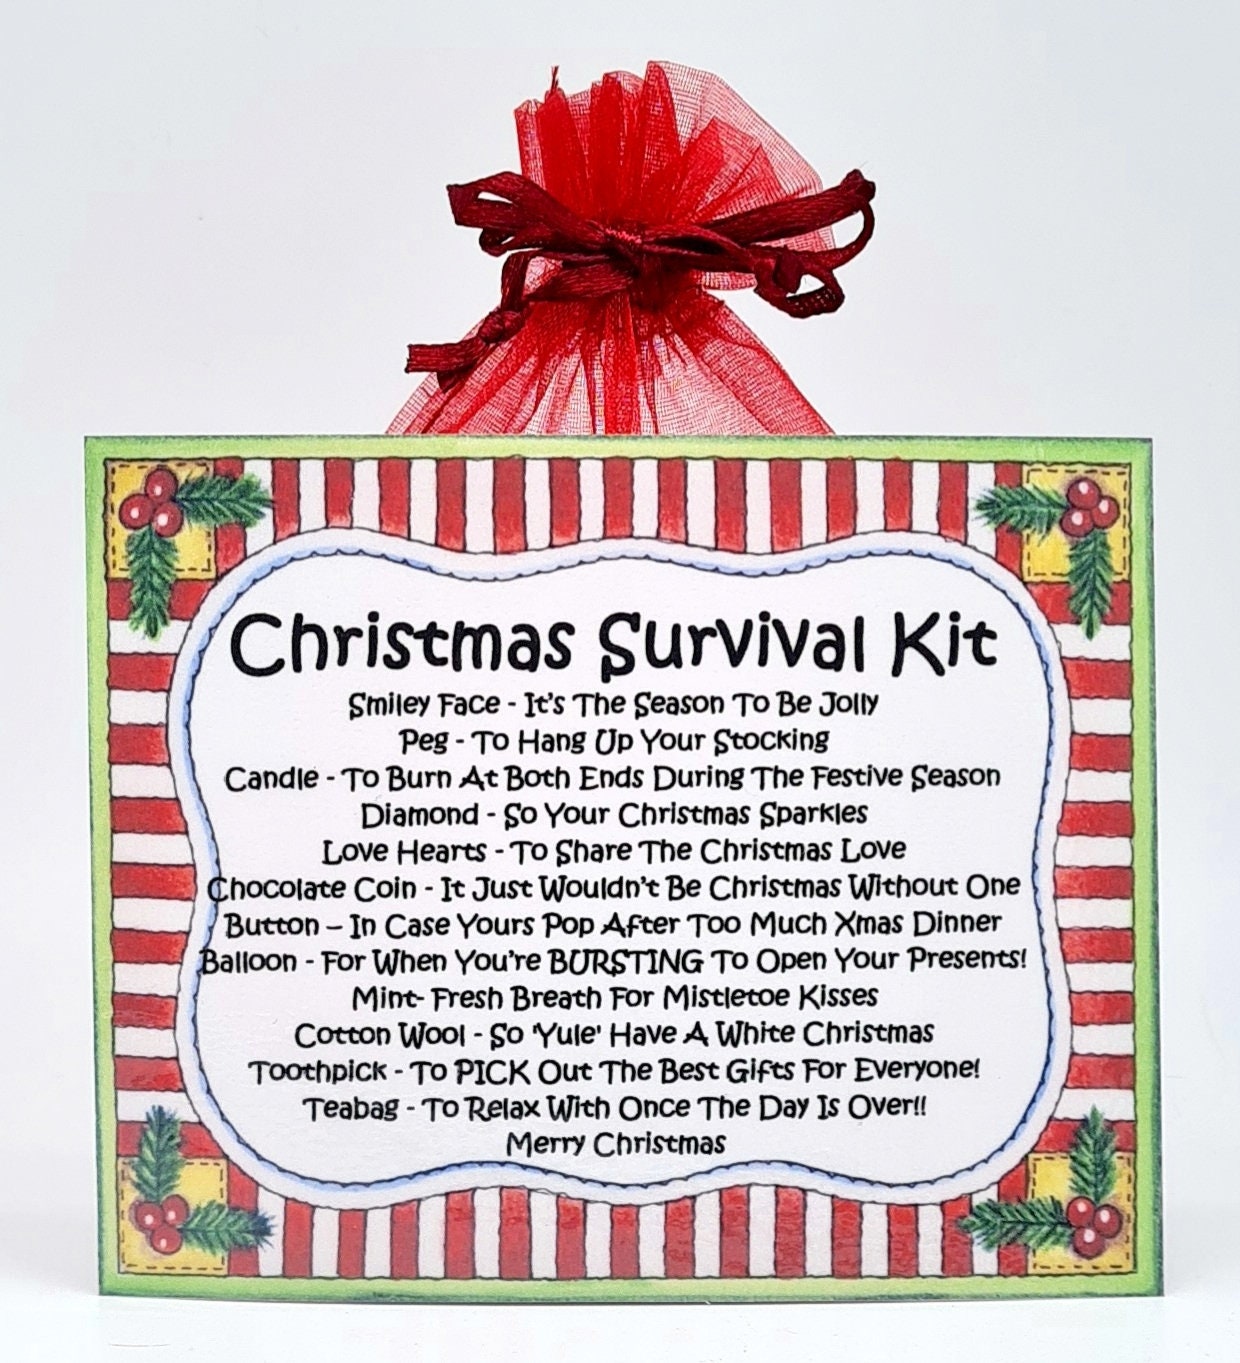 Christmas Survival Kit Fun Novelty Gift and Greetings Card Xmas